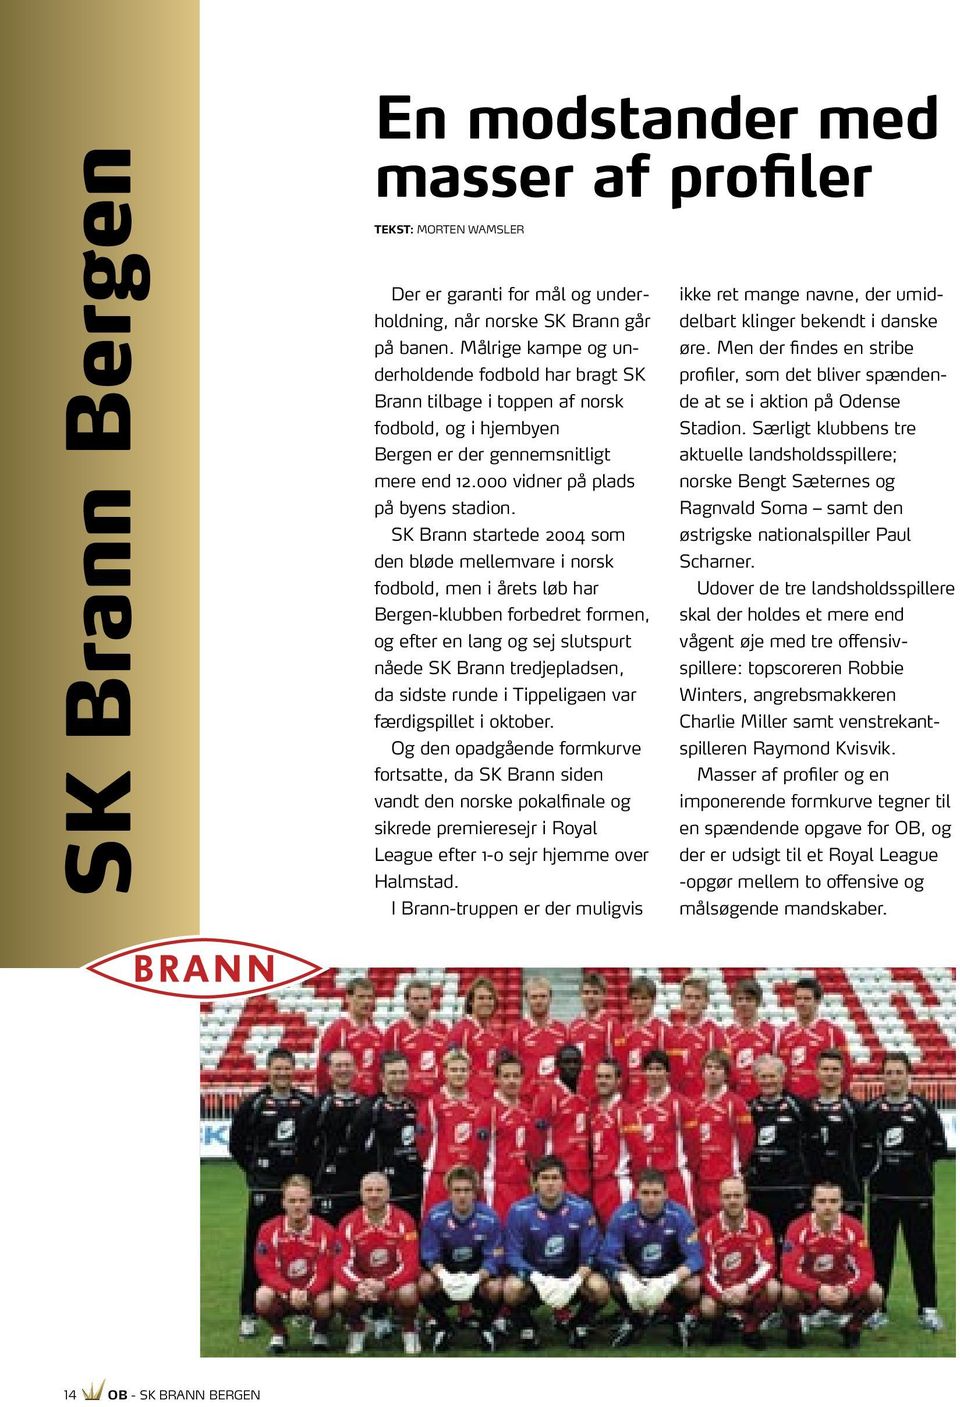 SK Brann startede 2004 som den bløde mellemvare i norsk fodbold, men i årets løb har Bergen-klubben forbedret formen, og efter en lang og sej slutspurt nåede SK Brann tredjepladsen, da sidste runde i